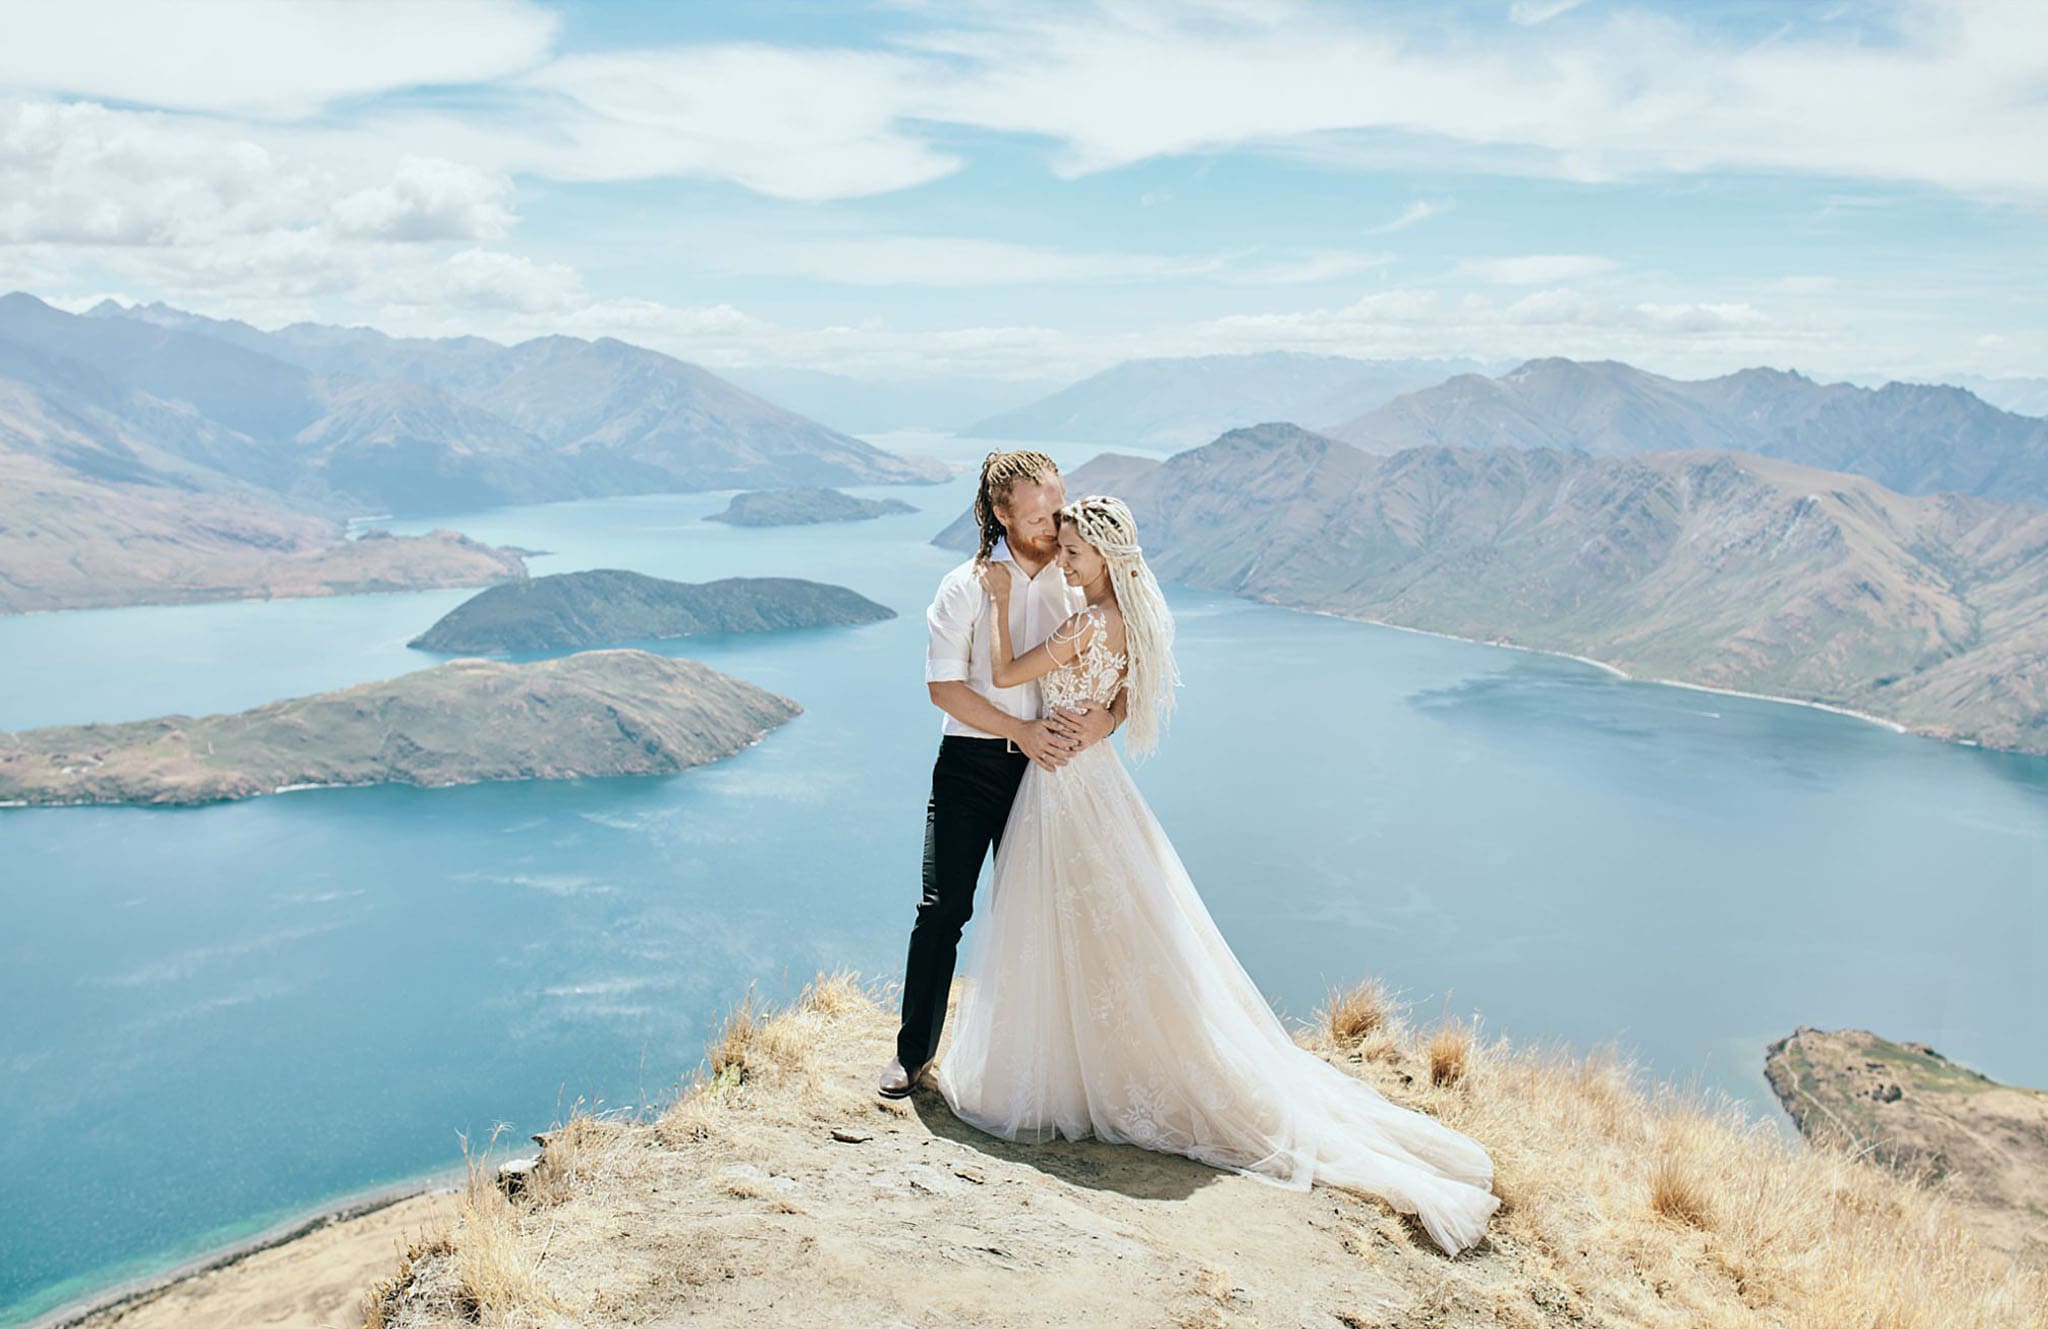 Natalia & Vladimir's Queenstown NZ Pre-Wedding Shoot